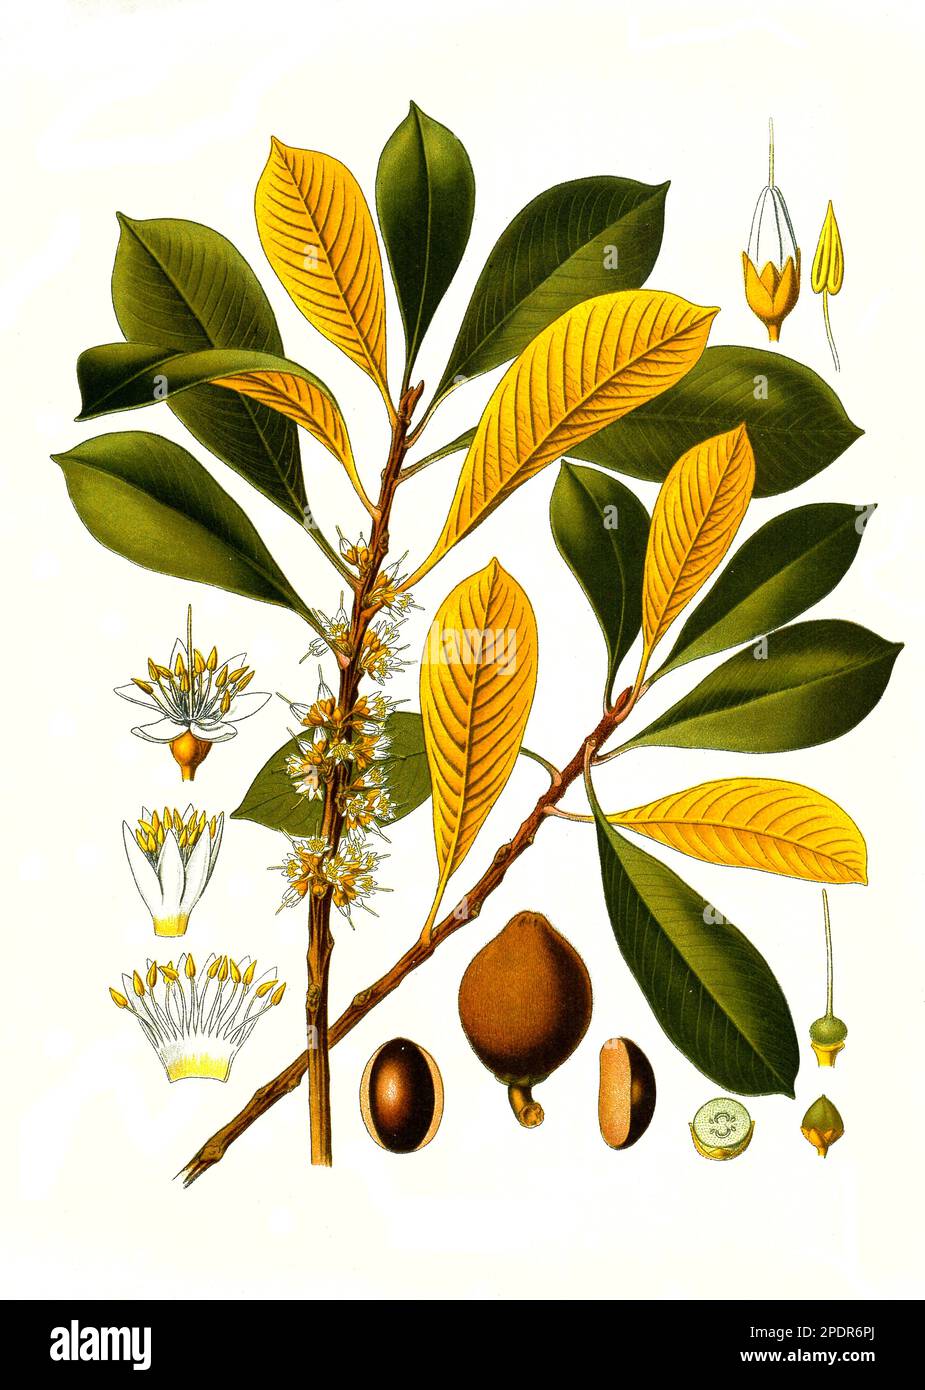 Heilpflanze, Guttaperchabaum (Palaquium gutta) ist eine Pflanzenart aus der Gattung der Guttaperchabäume, Historisch, digital restaurierte Reproduktion von einer Vorlage aus dem 18. Jahrhundert Stock Photo